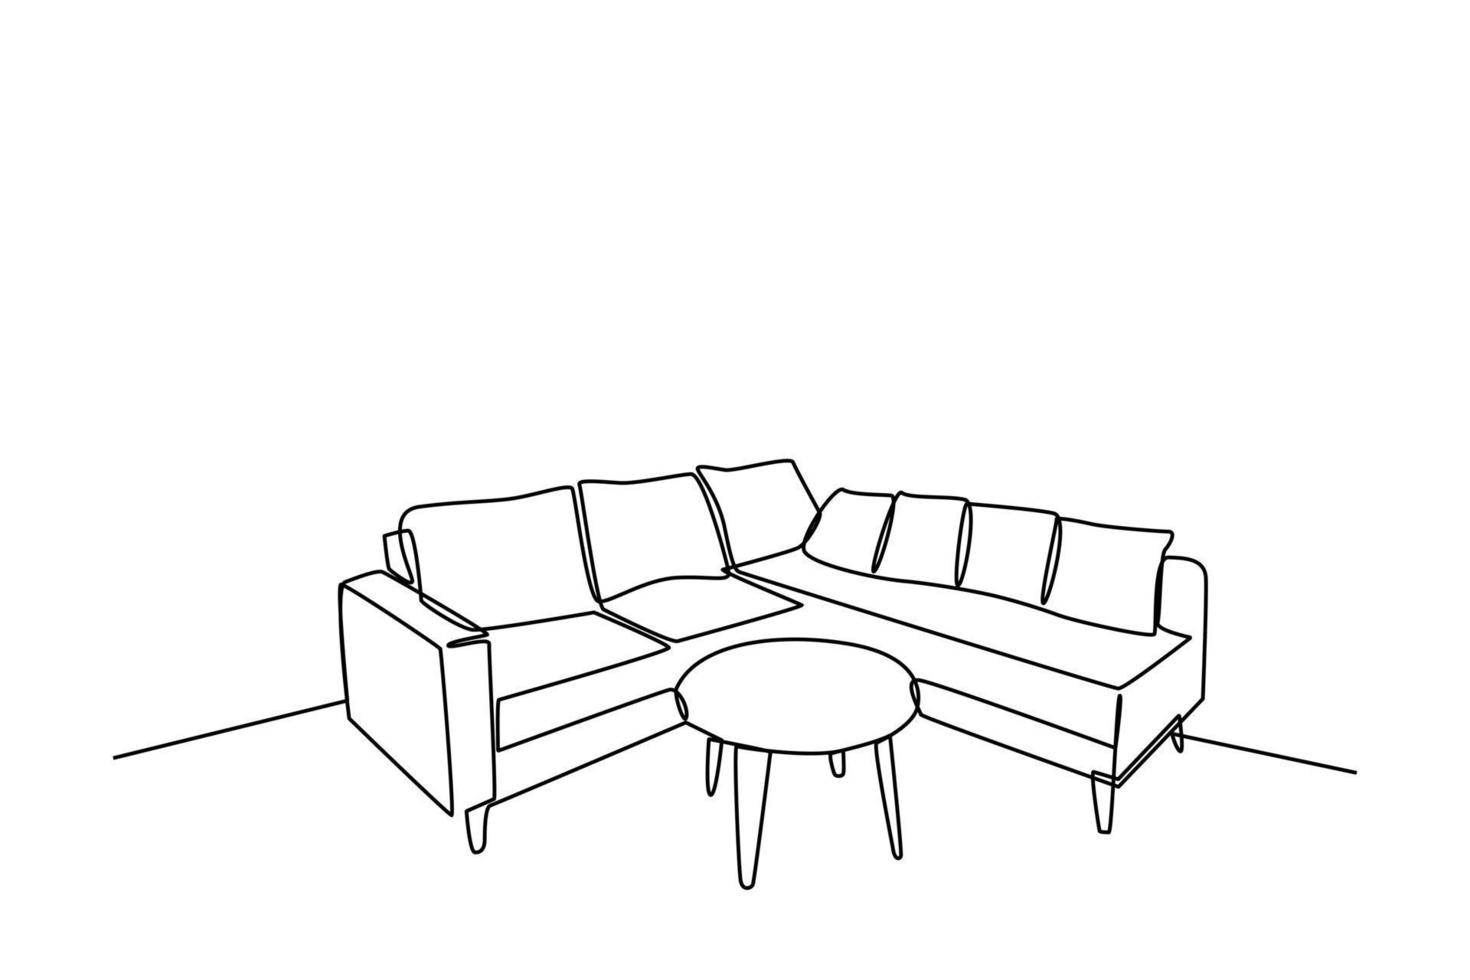 continuo uno linea disegno interno di il vivente camera con divano e decorazione Accessori. vivente camera concetto. singolo linea disegnare design vettore grafico illustrazione.